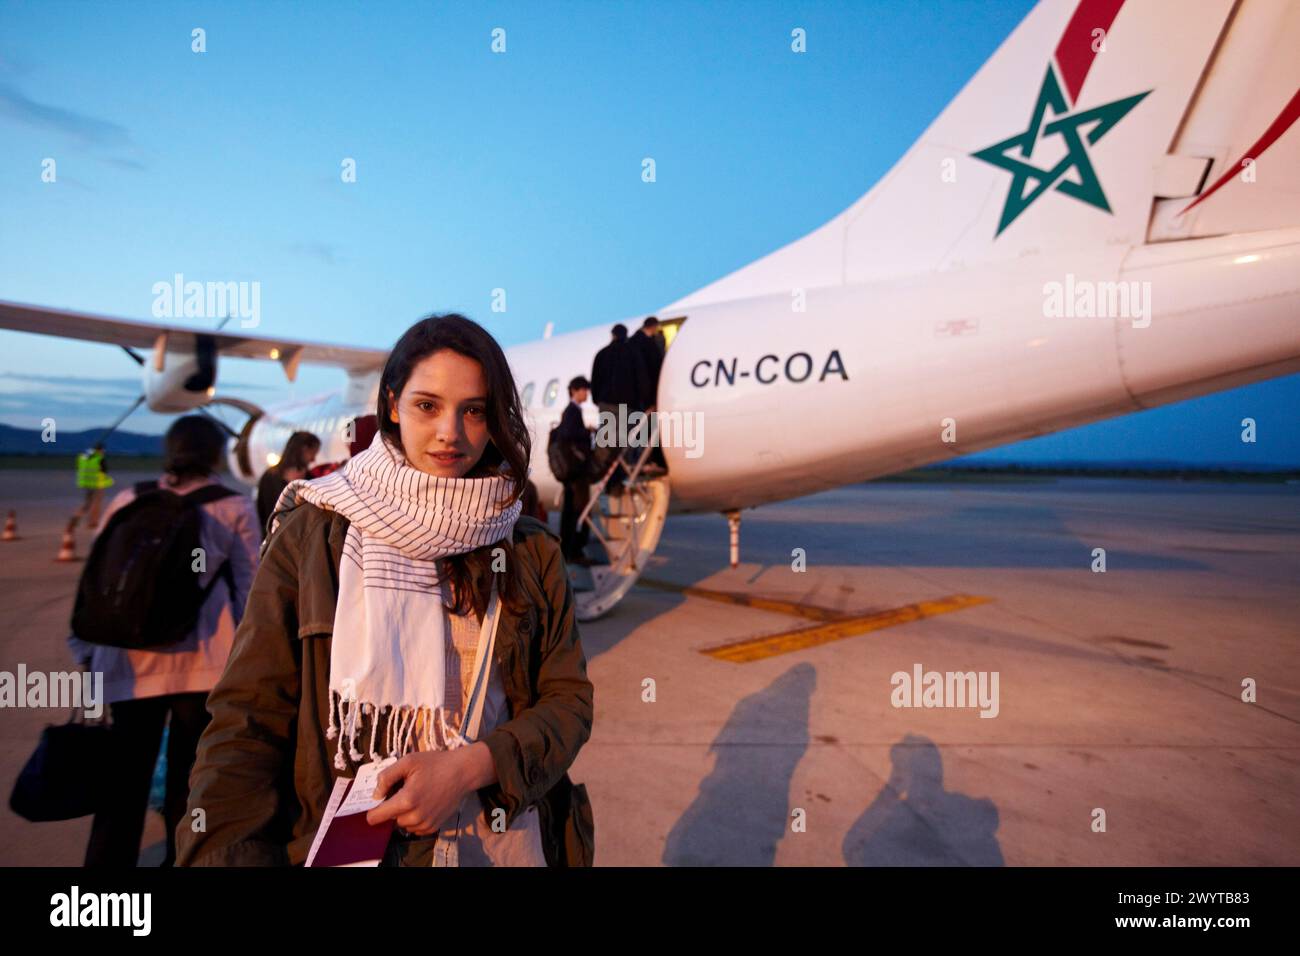 Aeropuerto, Casablanca, Marruecos. Stock Photo